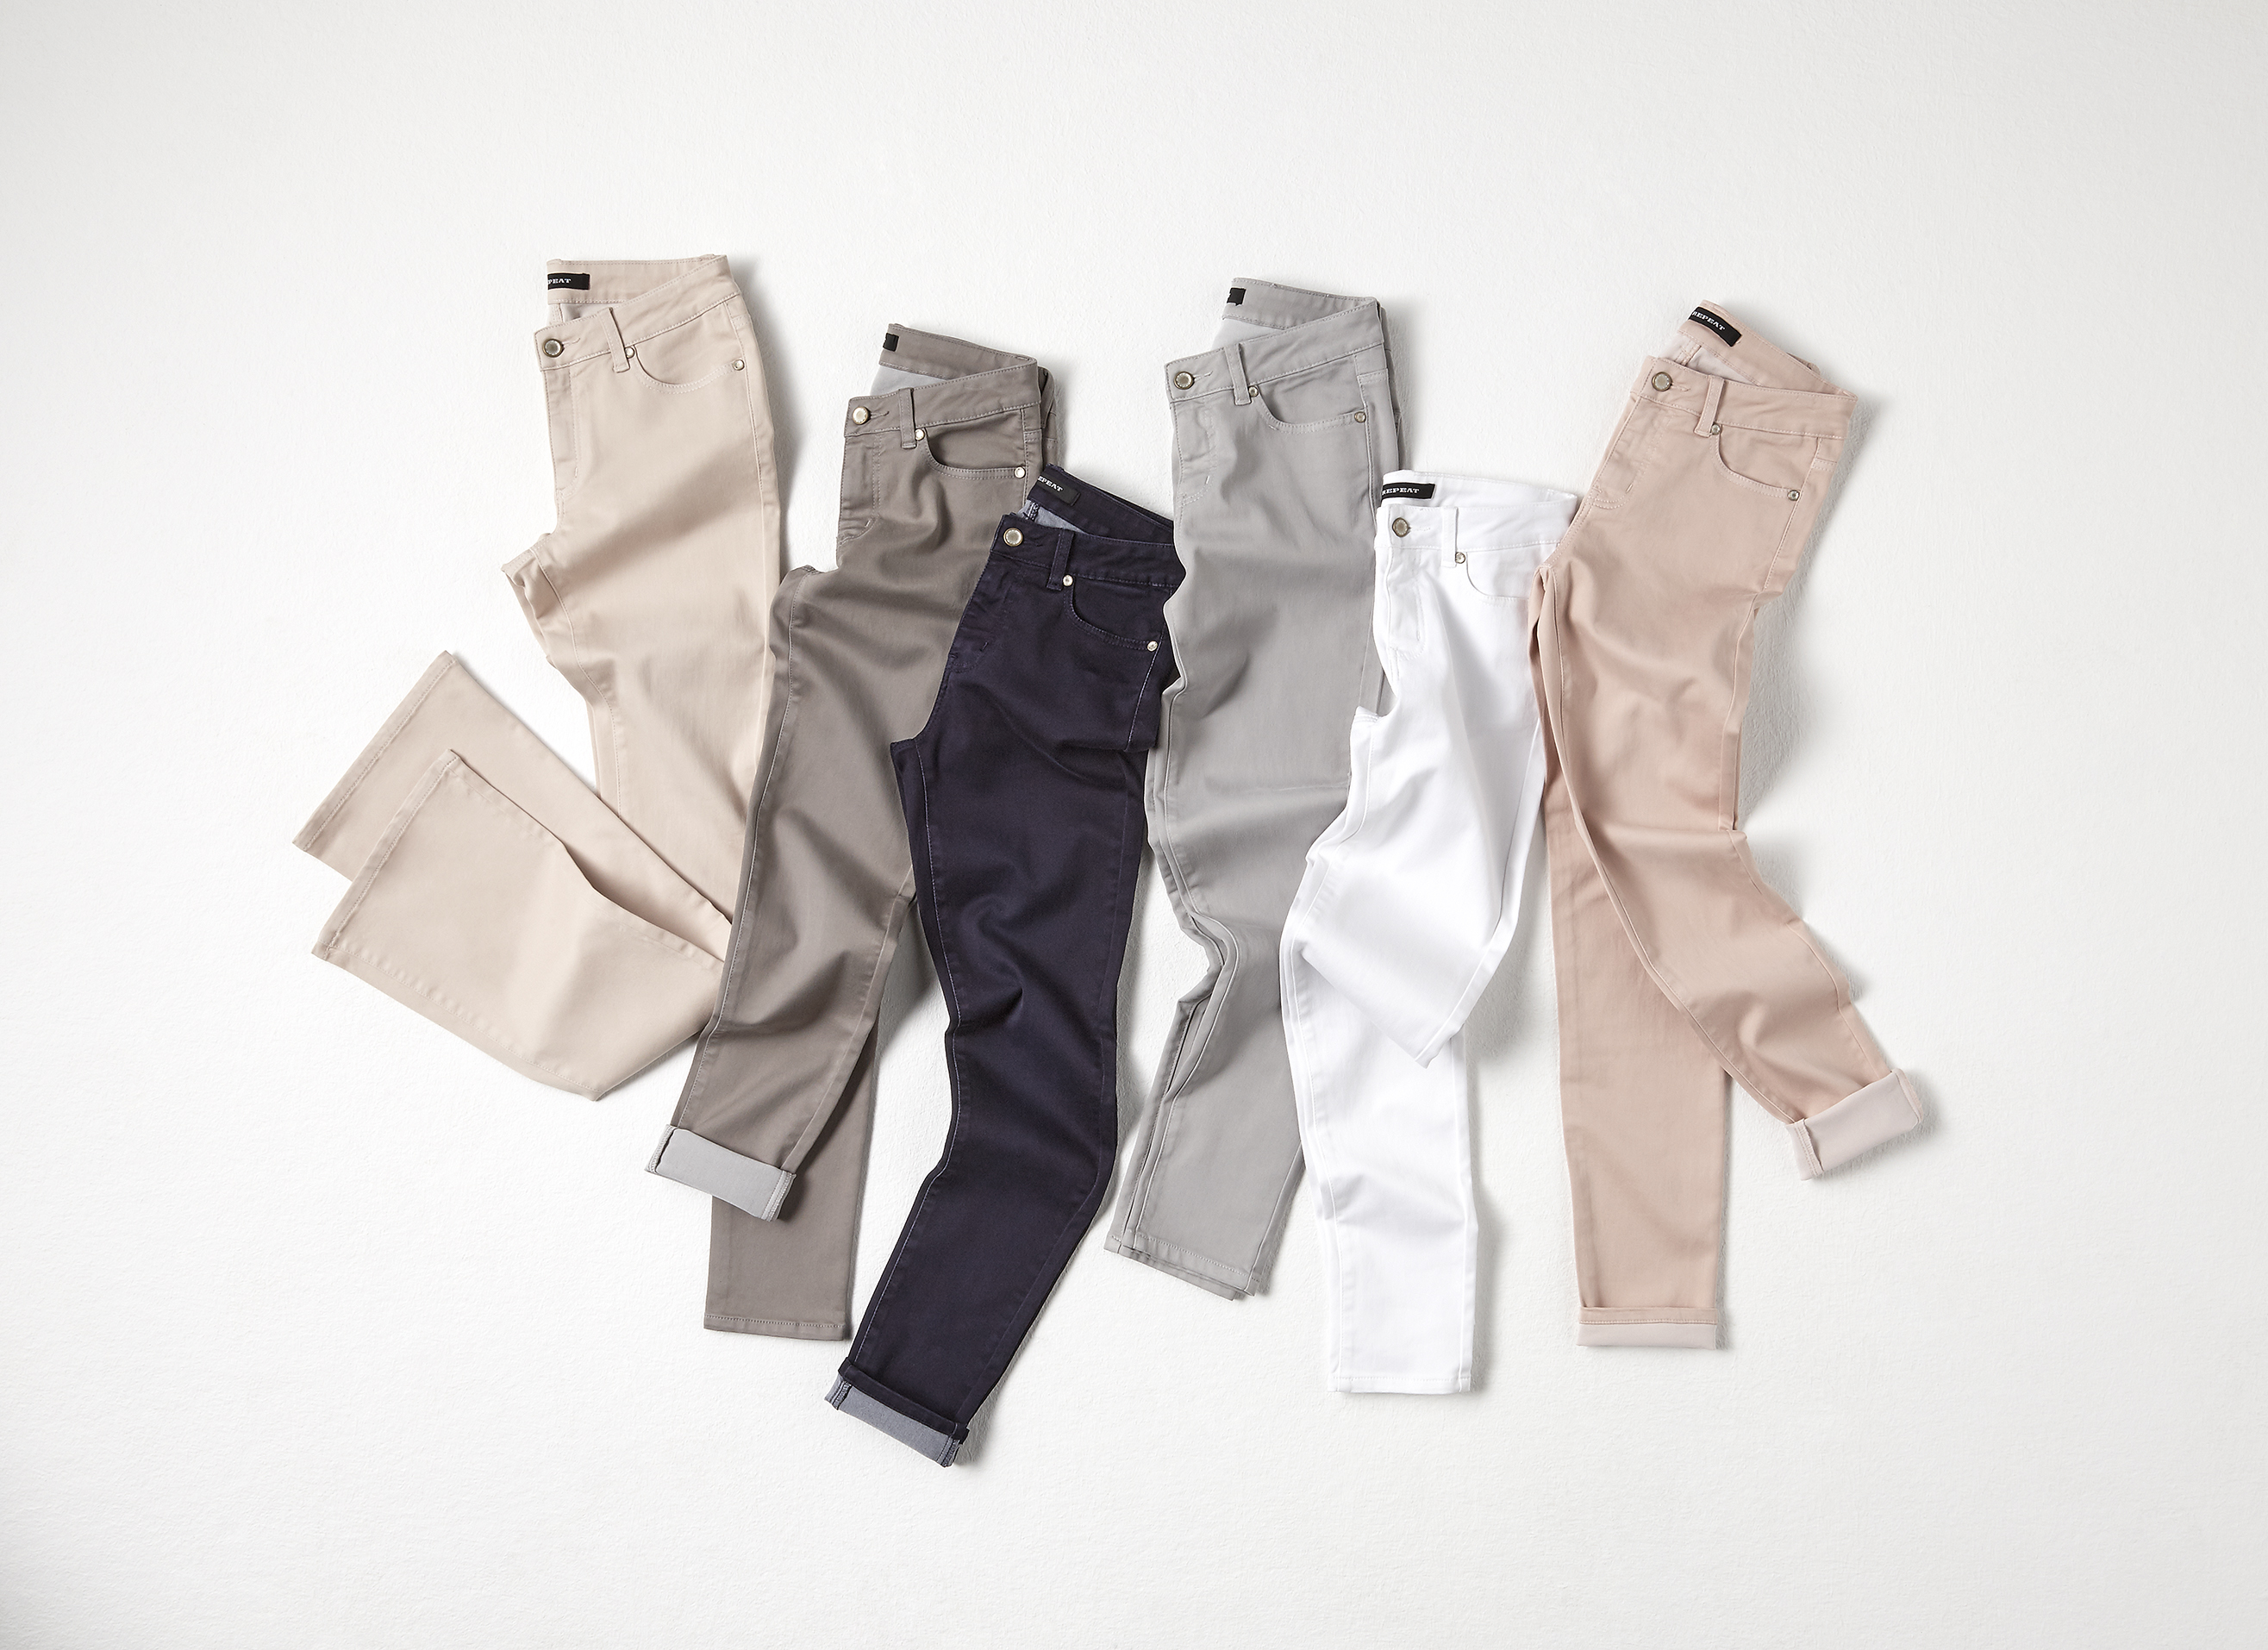 Les meilleurs matériaux pour des pantalons confortables et durables